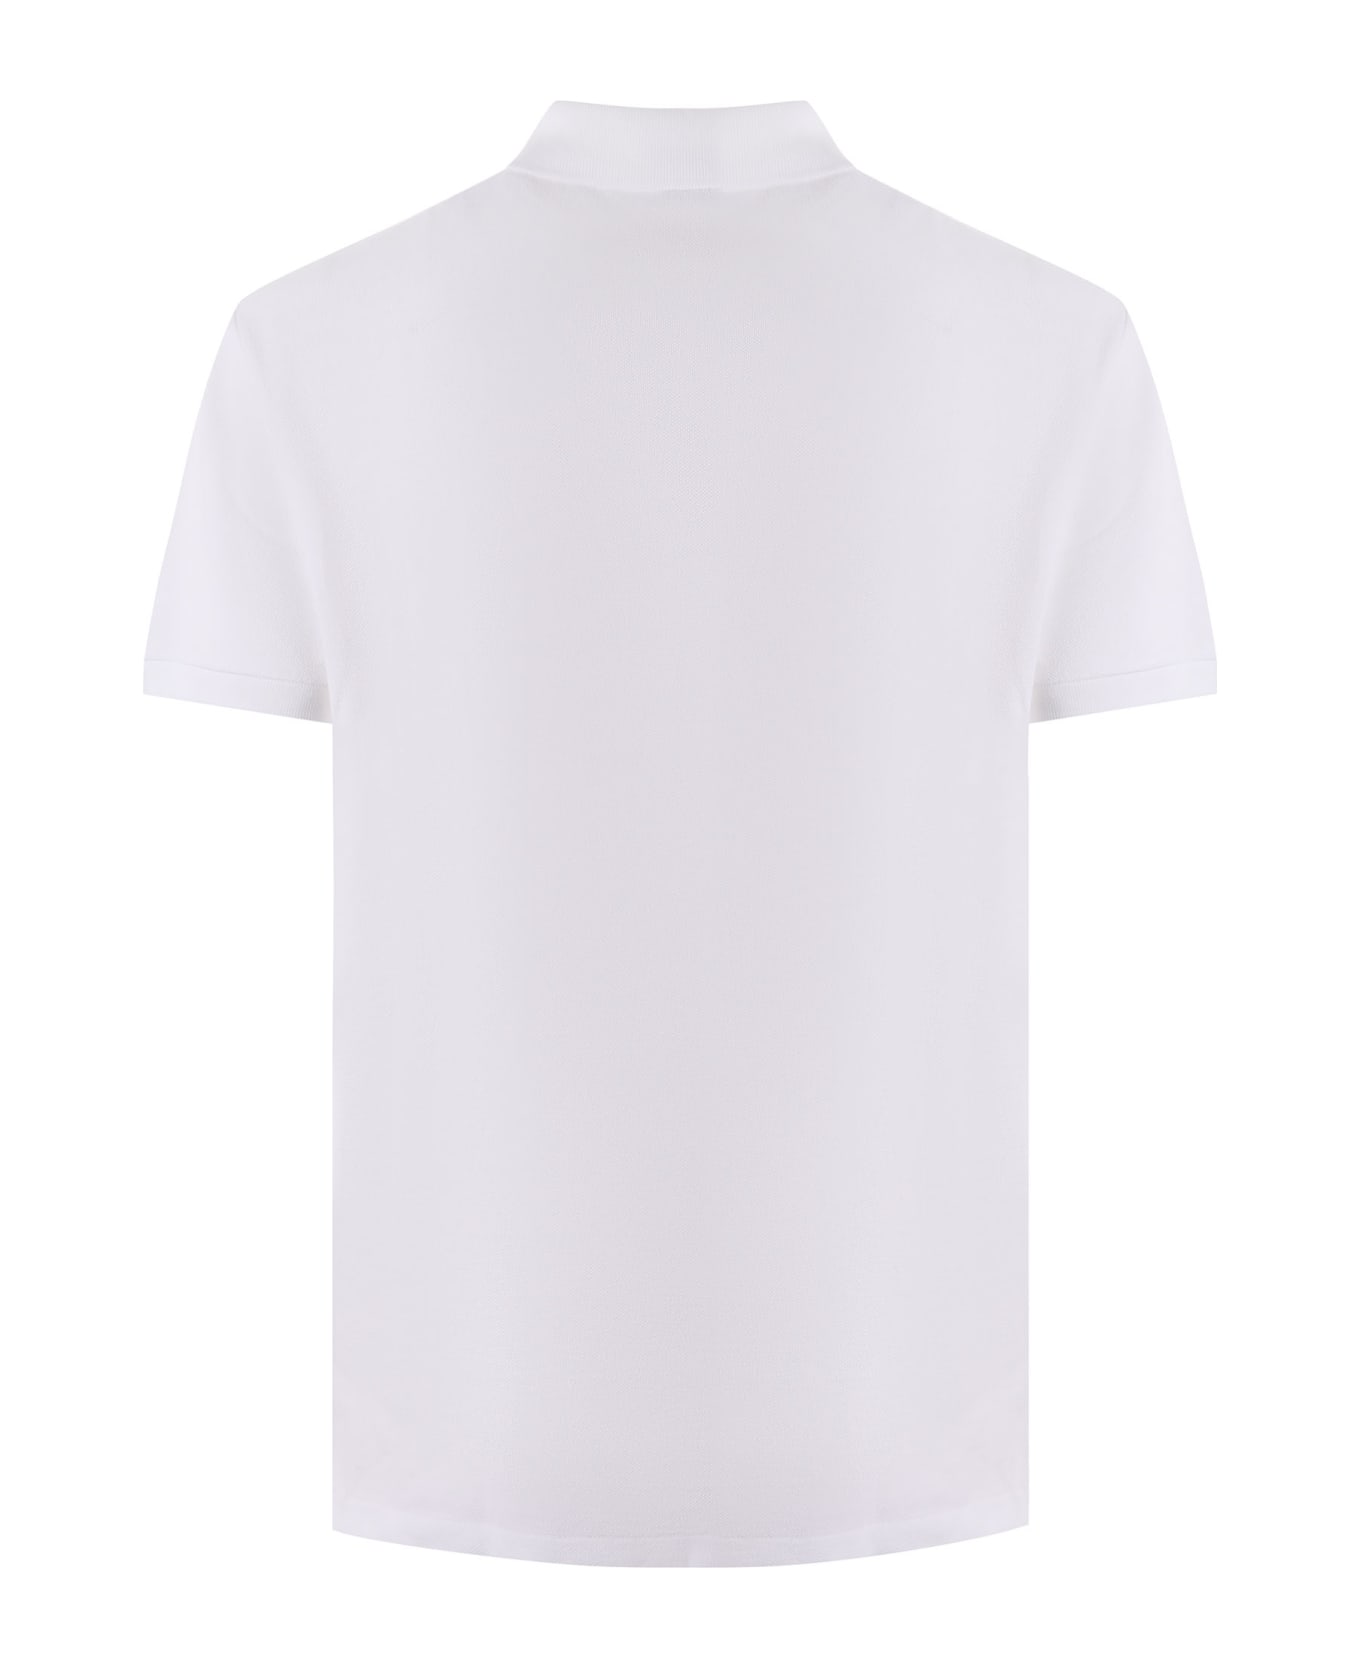 Polo Ralph Lauren "polo Ralph Lauren" Polo Shirt - Bianco ポロシャツ